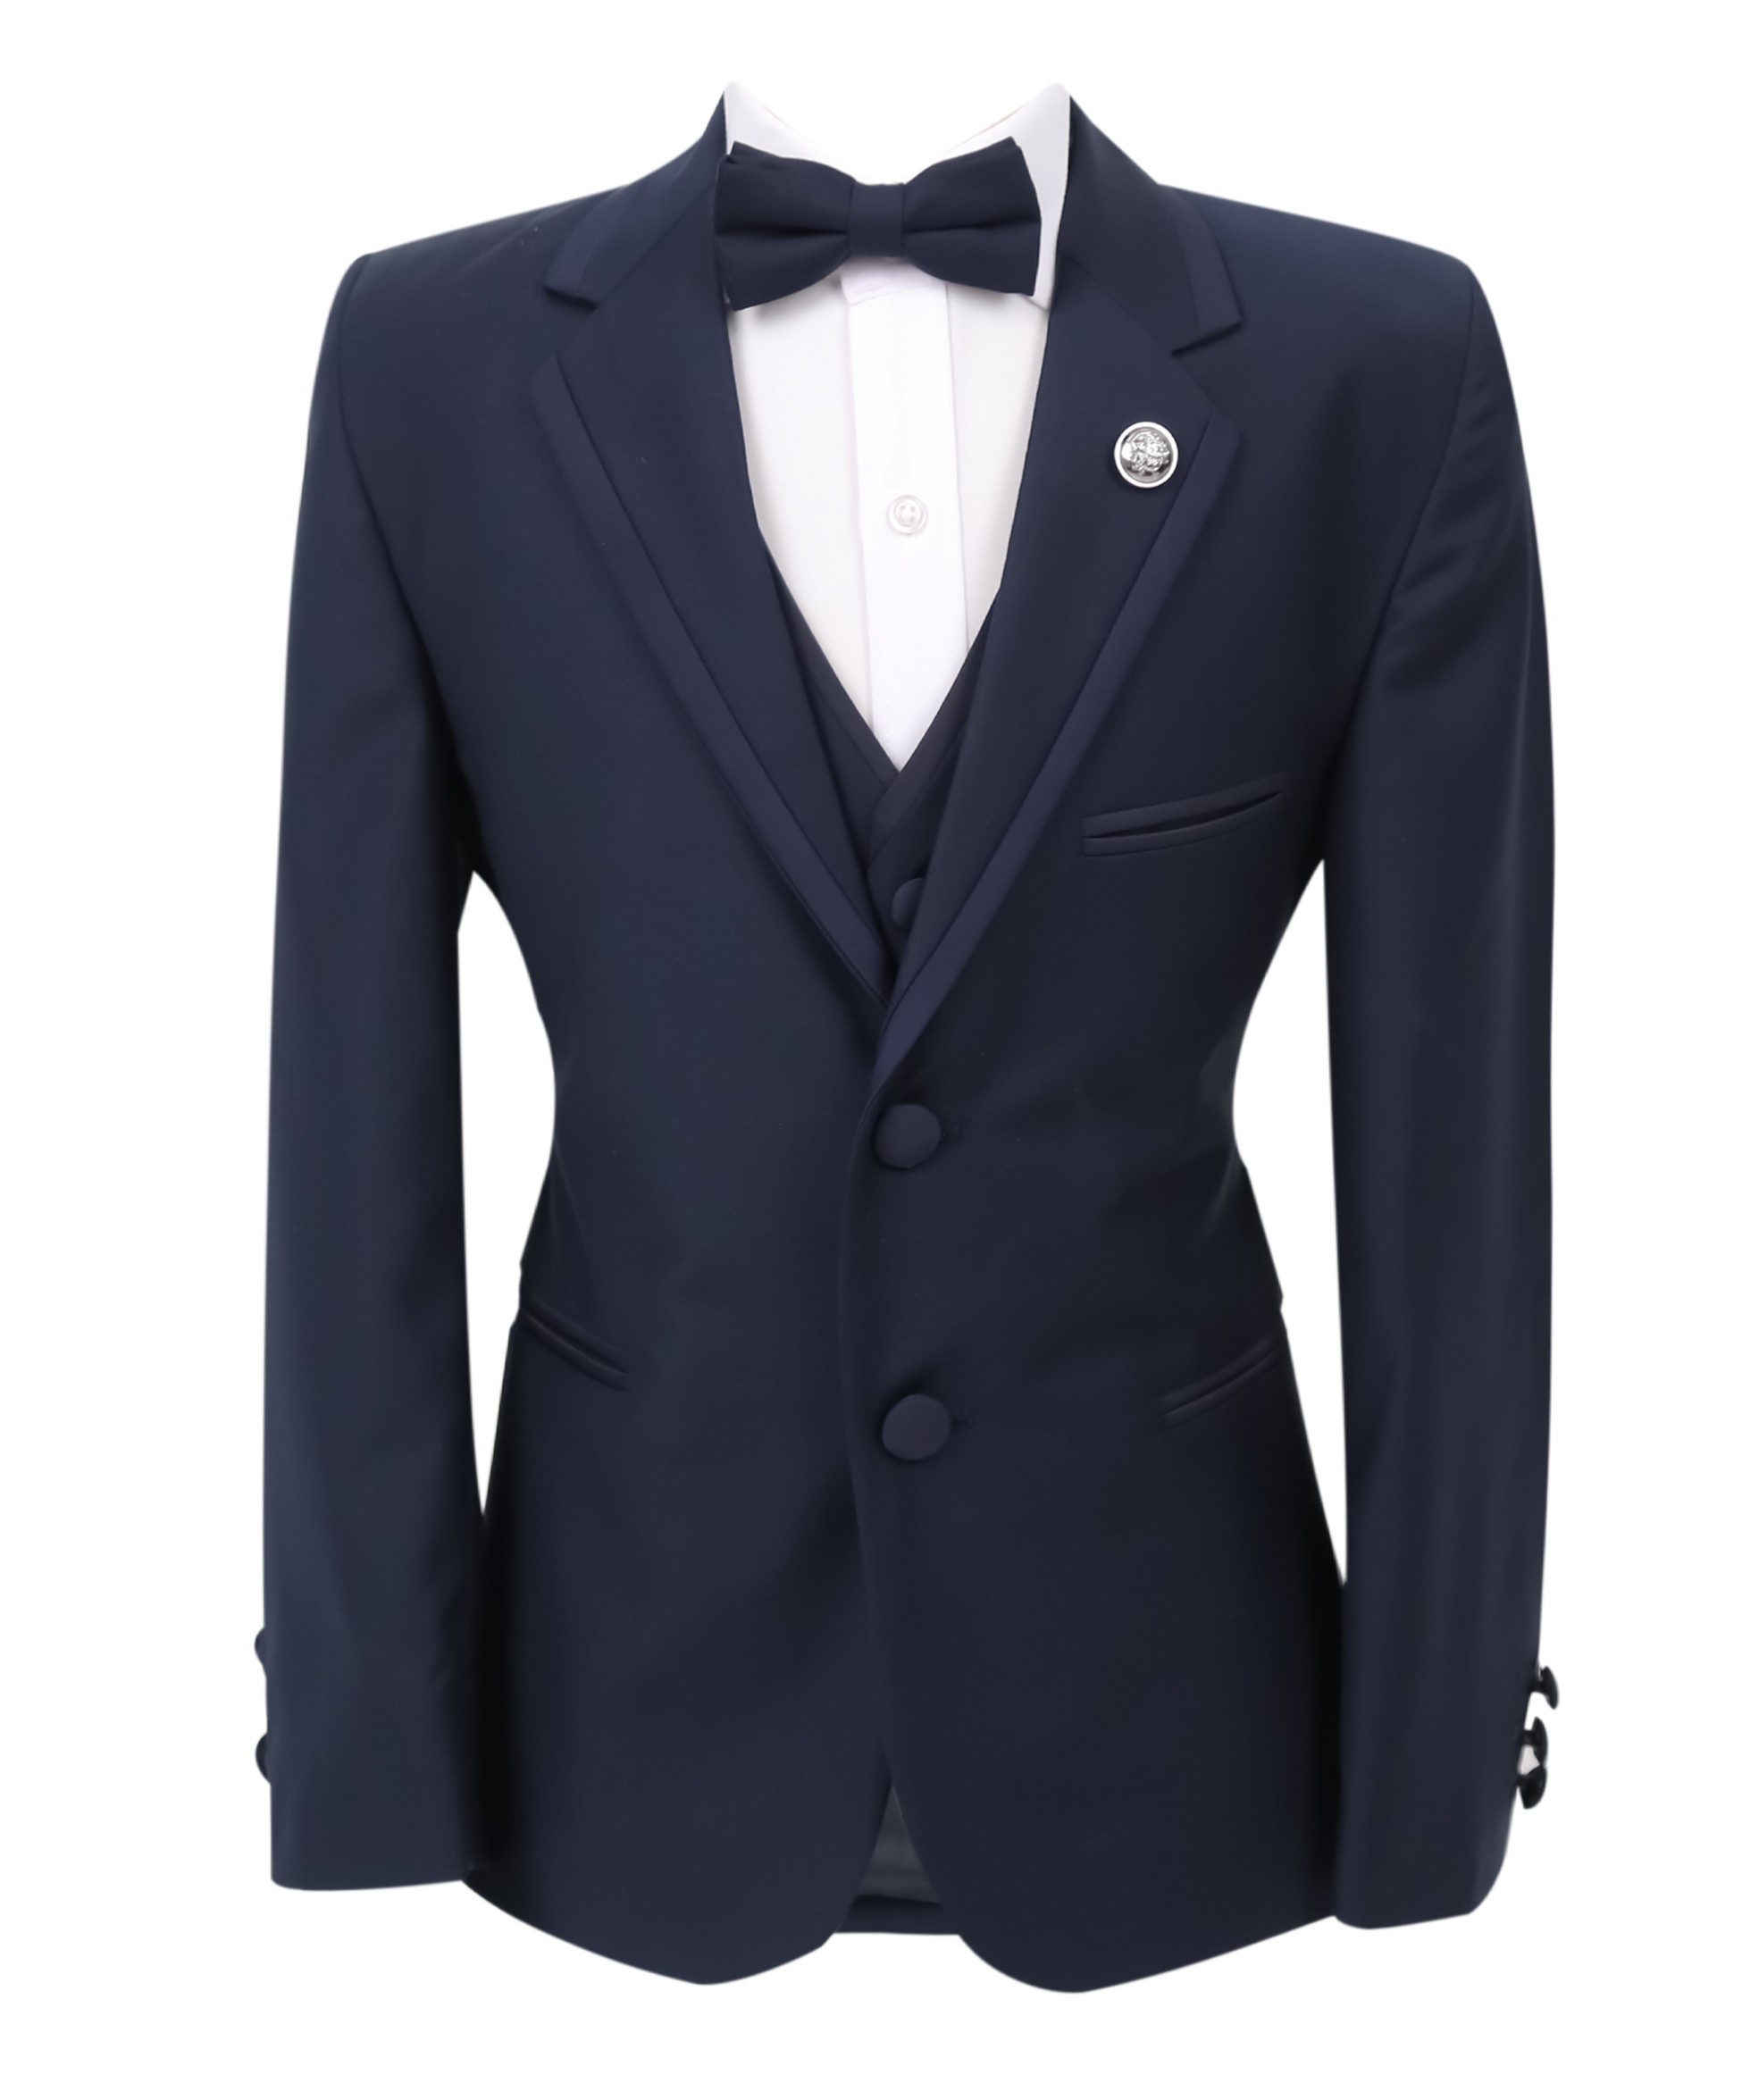 Jungen Smoking Paspel Dinner Anzug, Slim Fit 5-Teiliges Set für Hochzeiten und Besondere Anlässe - Navy blau